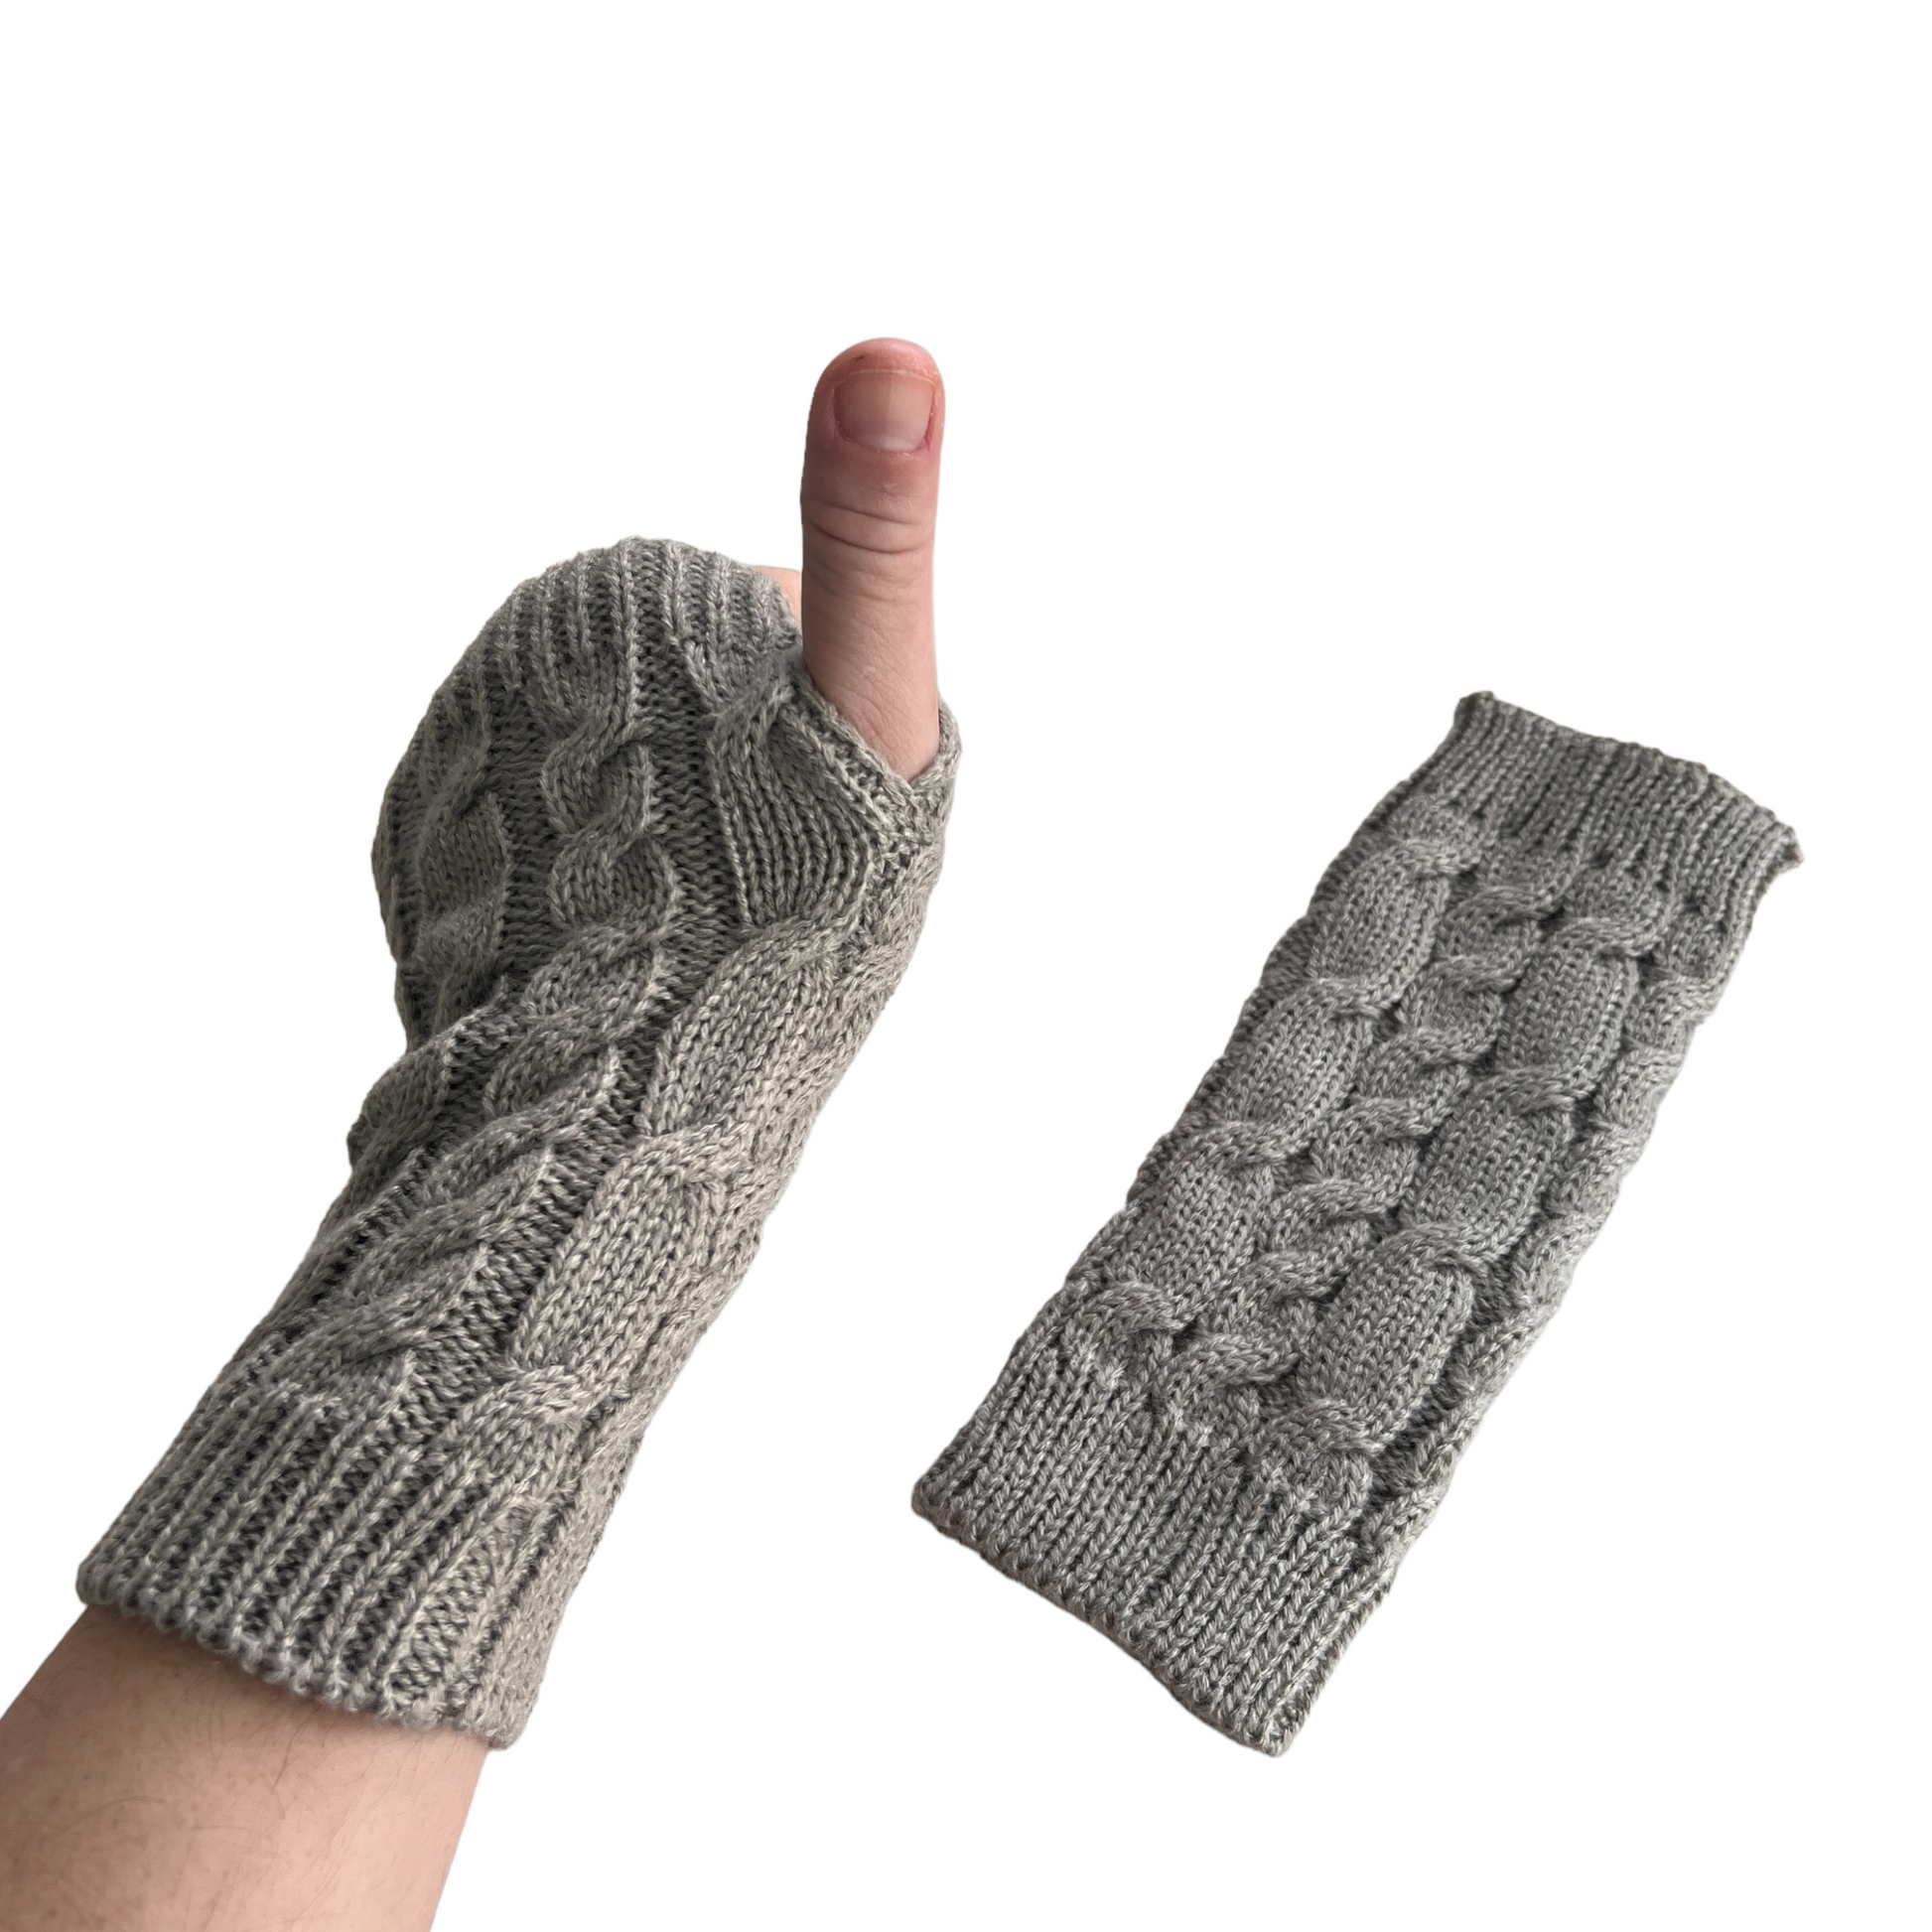 Hand Knitted Wrist Warmers Gloves & Mittens SPIRIT SPARKPLUGS   